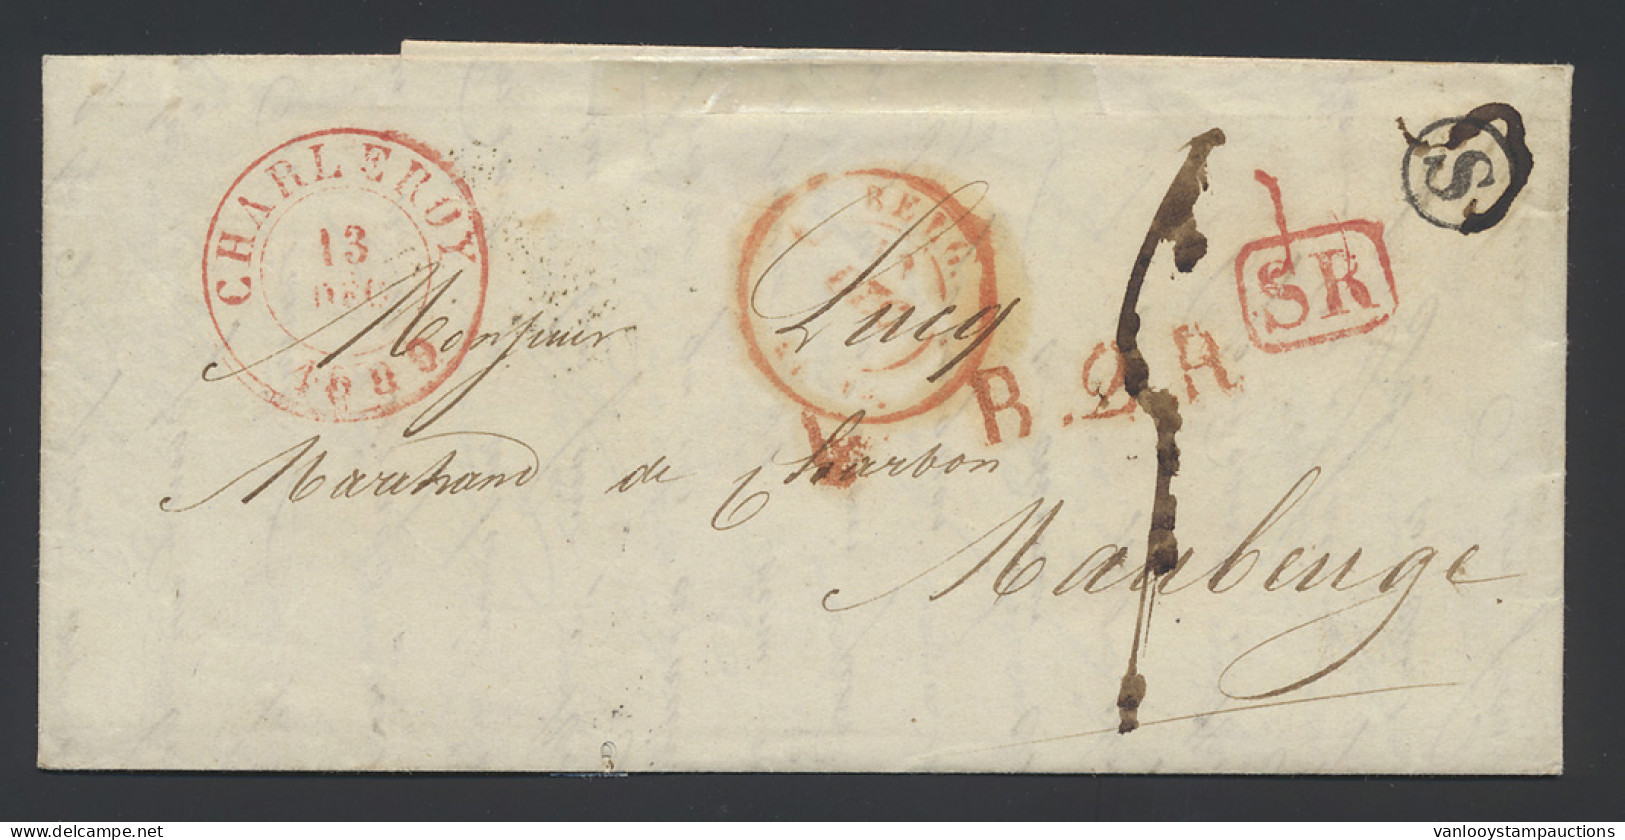 1839 Mooie Brief Met Postbusletter S In Cirkel, Rode SR-stempel, Dubbelcirkelstempel Charleroi 13 Dec 1839 Naar Maubeuge - 1830-1849 (Belgique Indépendante)